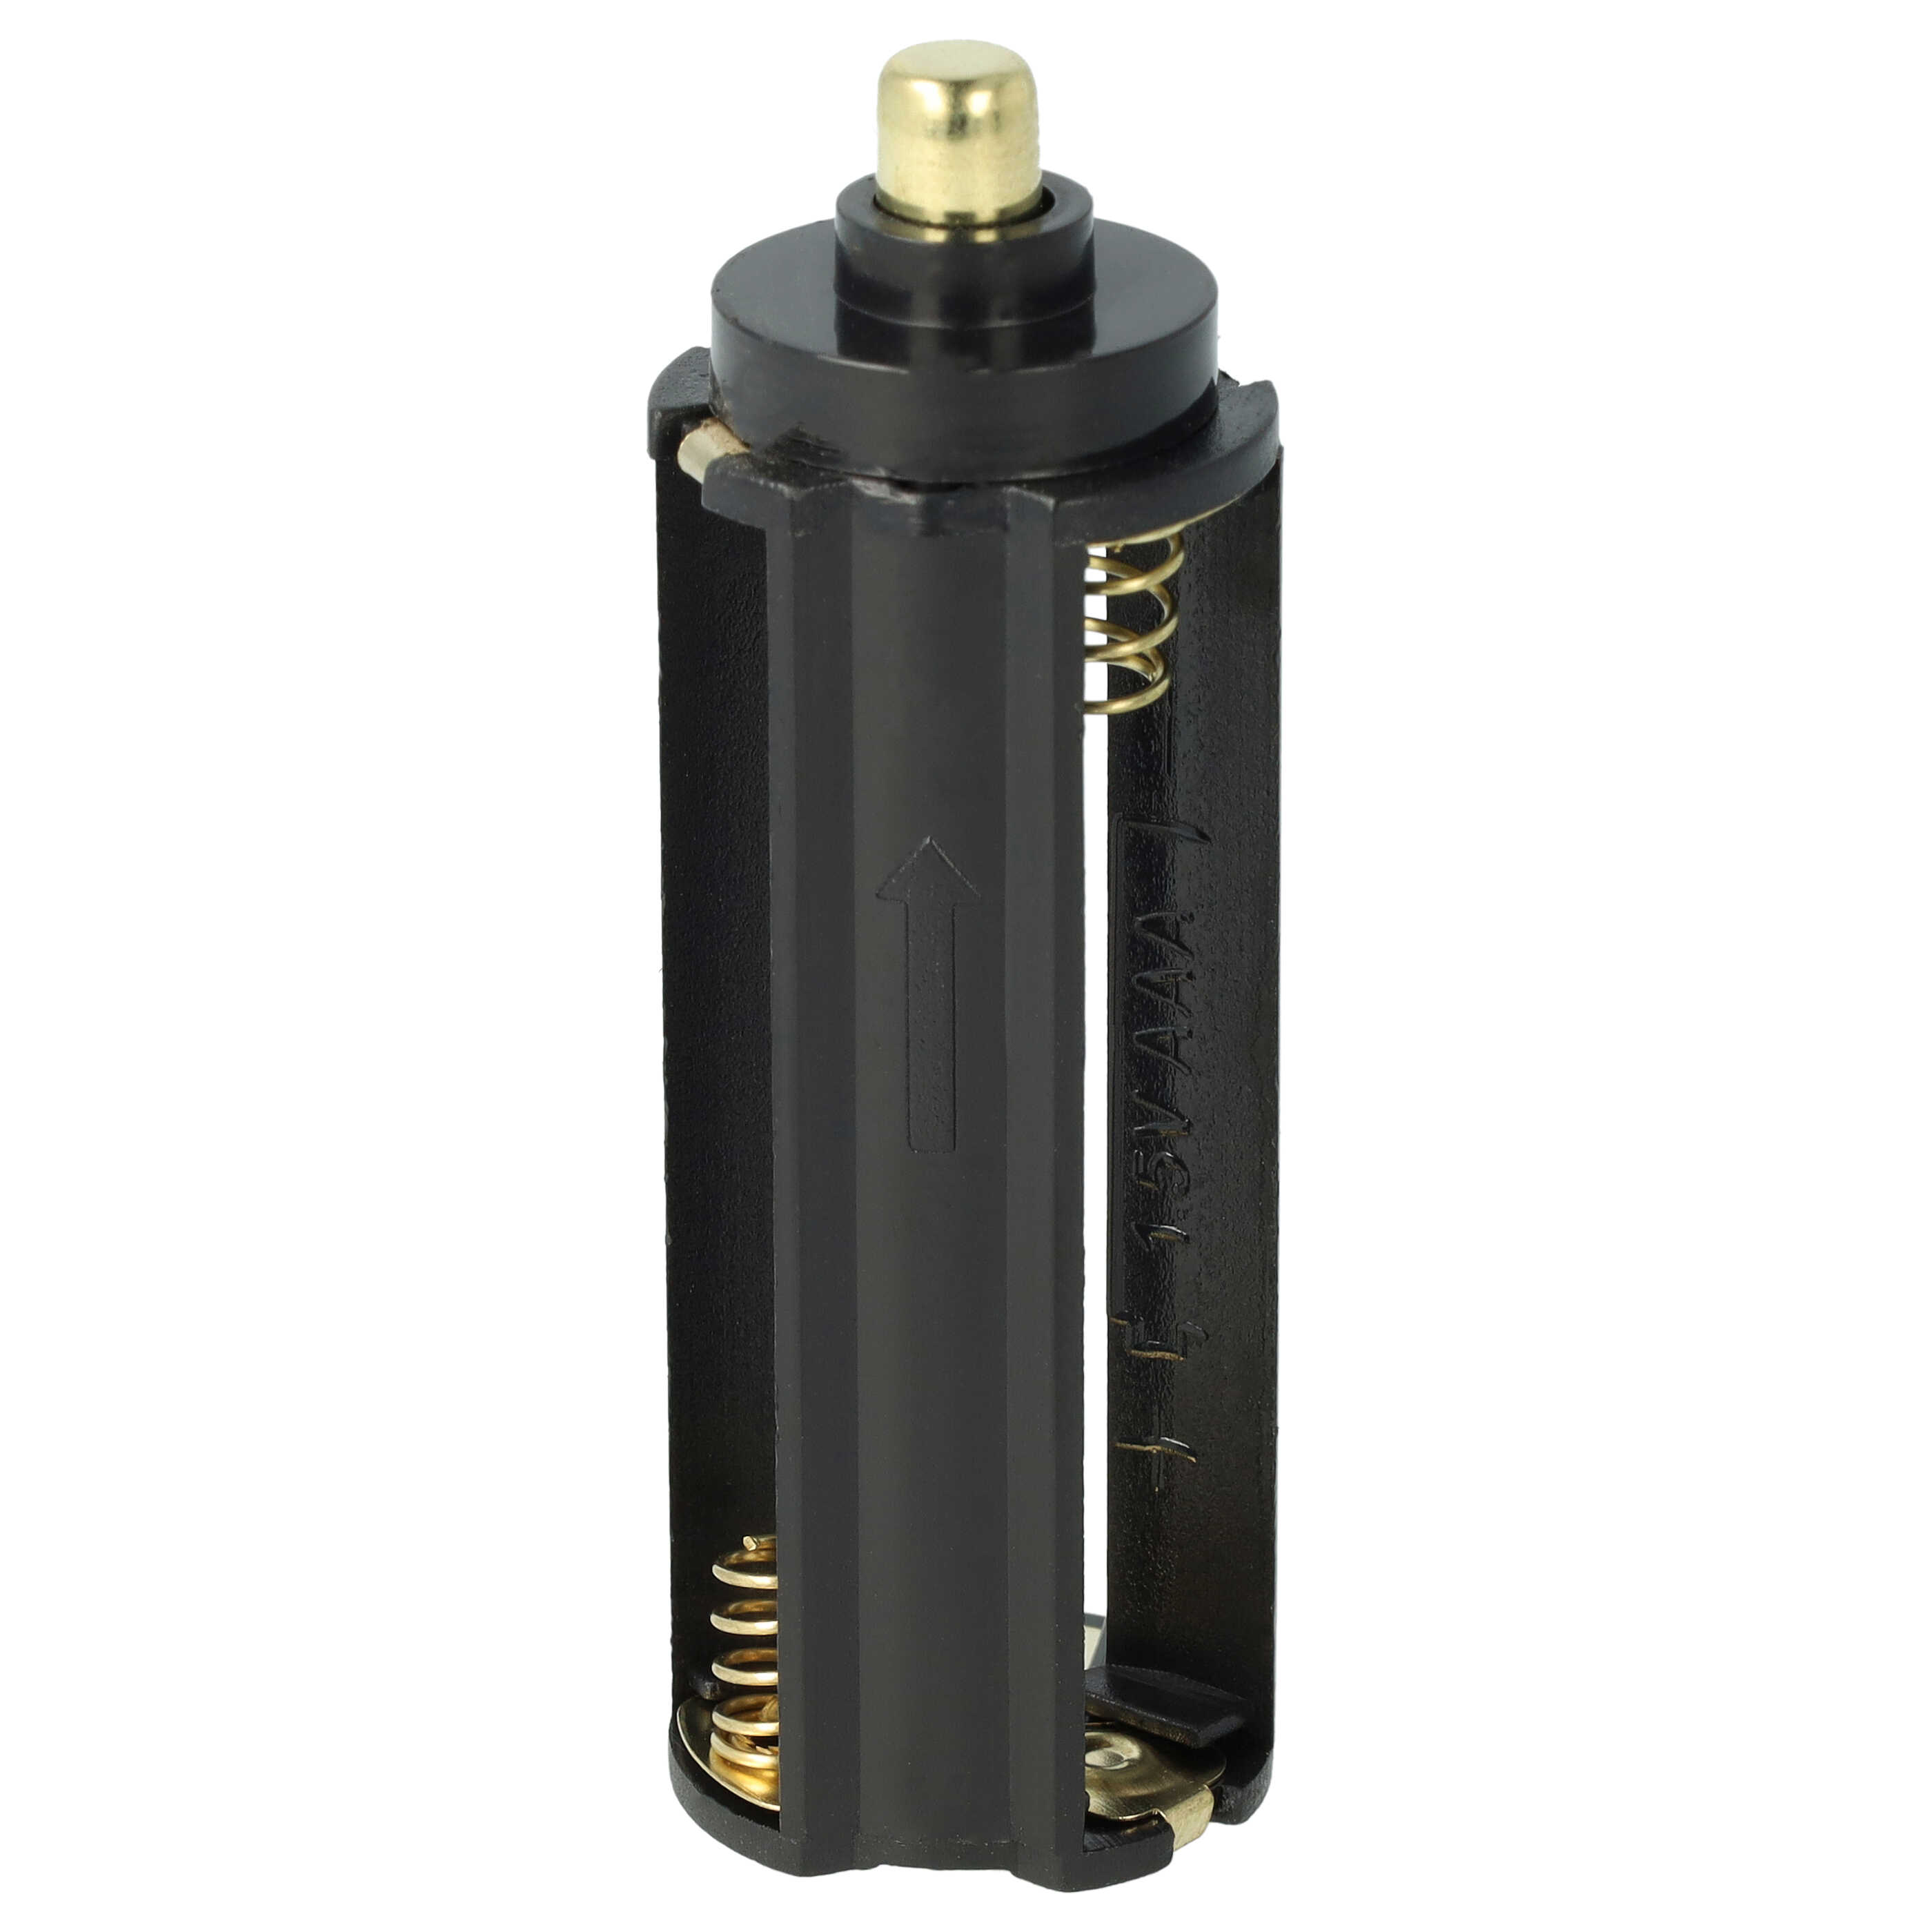 Adaptador de pilas micro / AAA a celdas 18650 para linternas